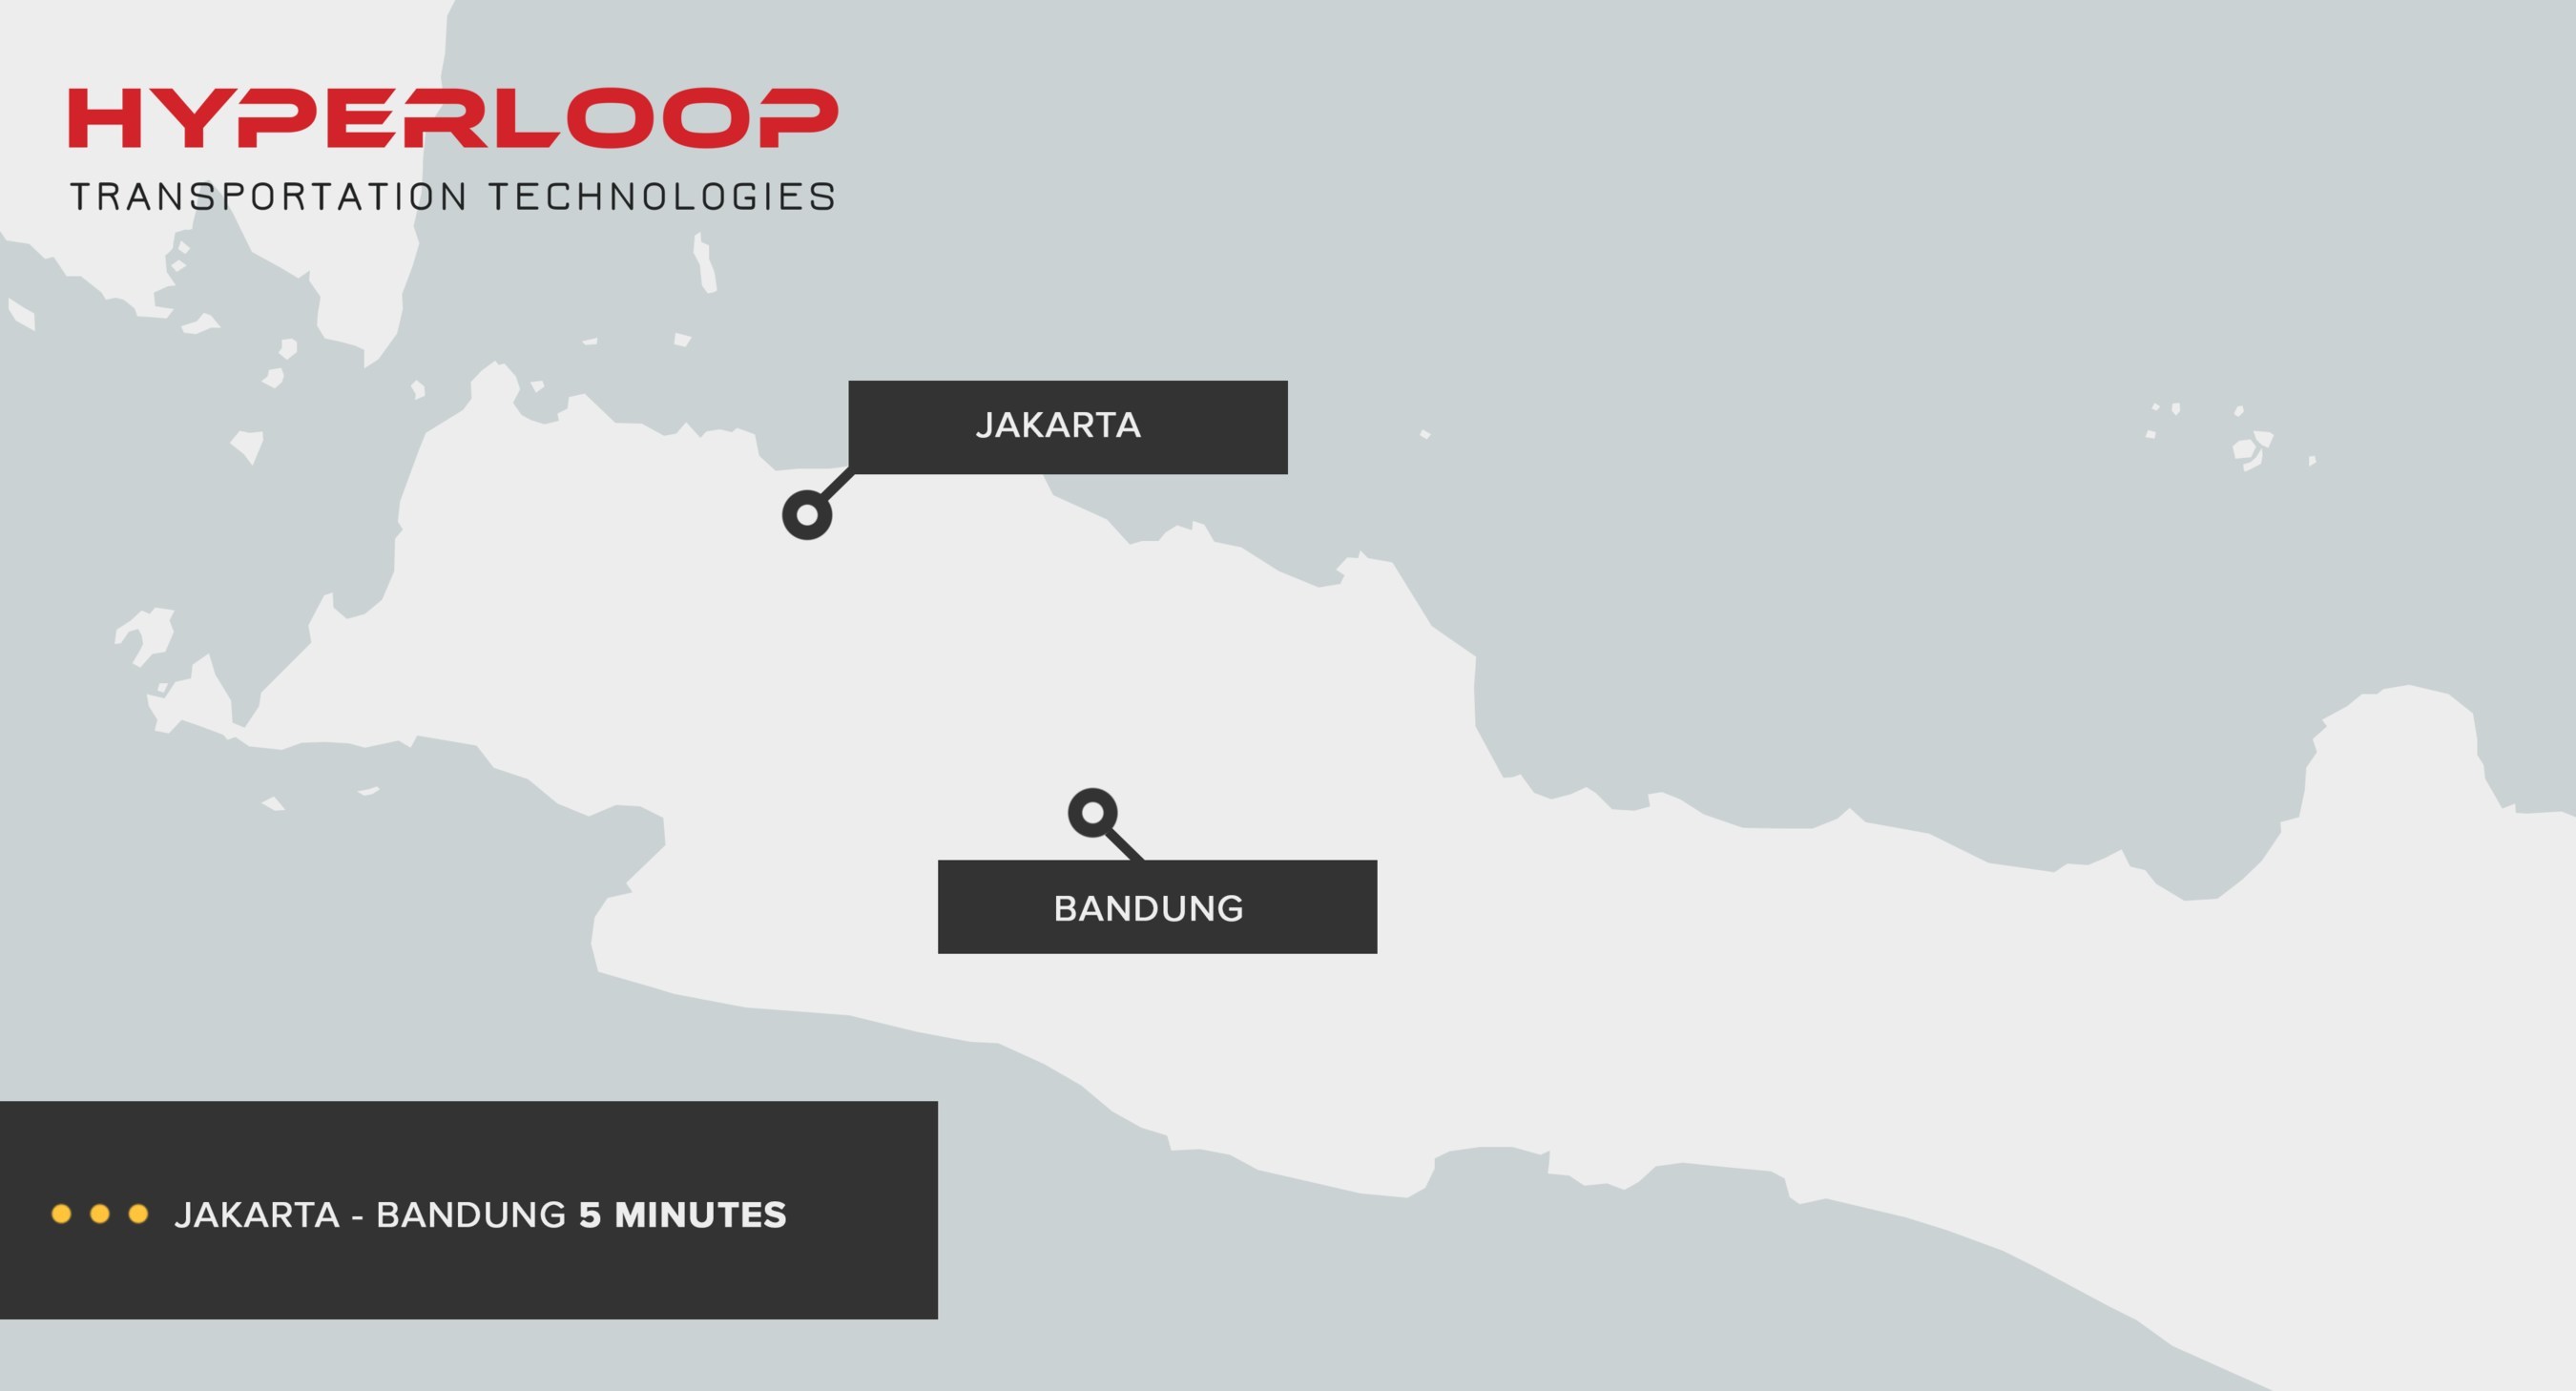 Sistem transportasi Hyperloop ini punya kecepatan sangat tinggi, yakni hingga 1200 km/jam. Jakarta-Bandung bisa ditempuh hanya dalam waktu 5 menit! (foto: Hyperloop Transportation Technologies)